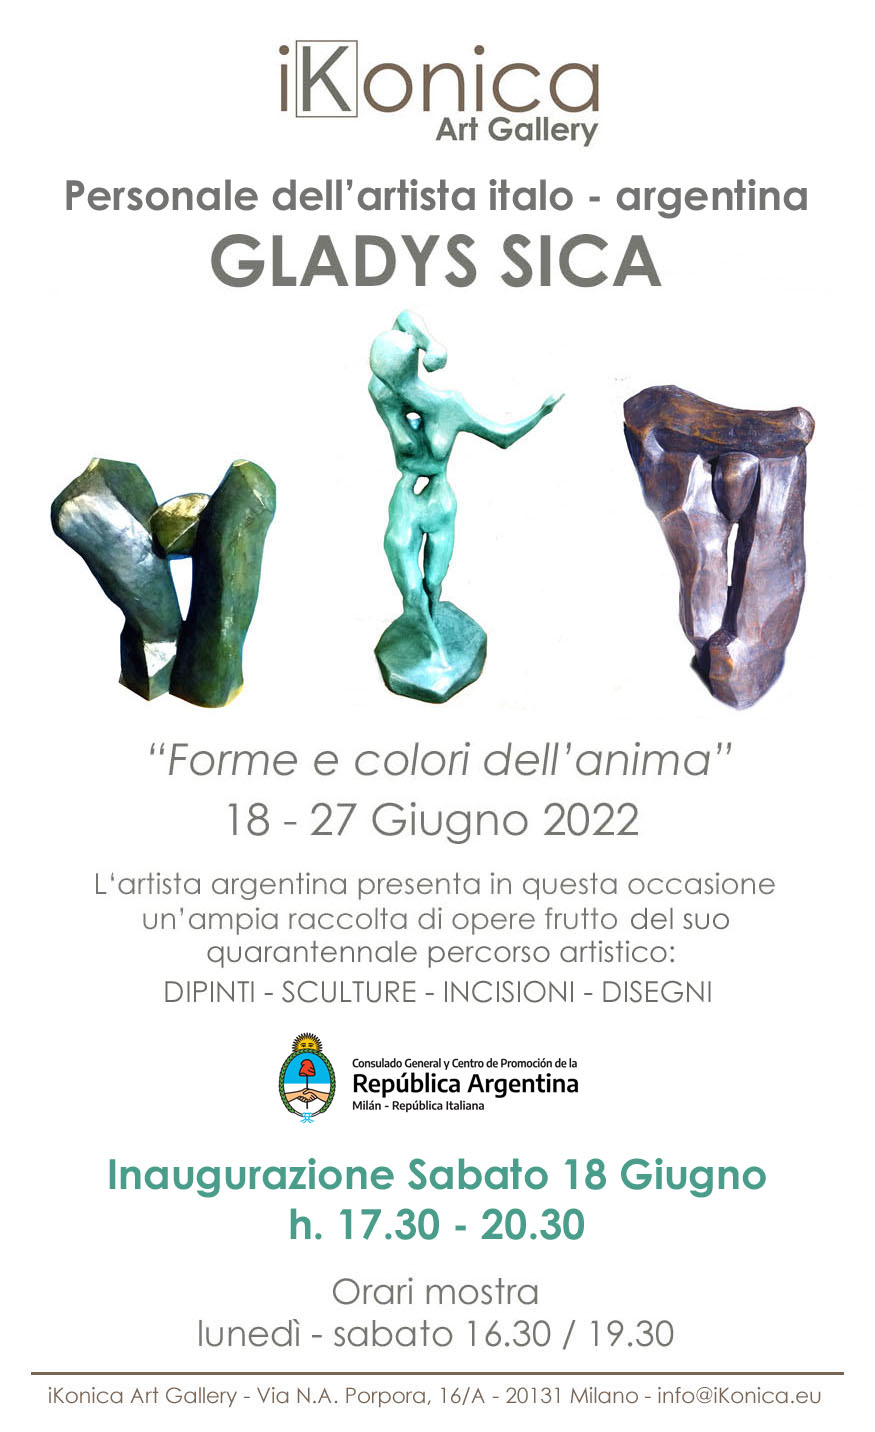 2022 - Personale, 'Forme e colori dell'anima' di Gladys Sica, iKonica Art Gallery, Milano.